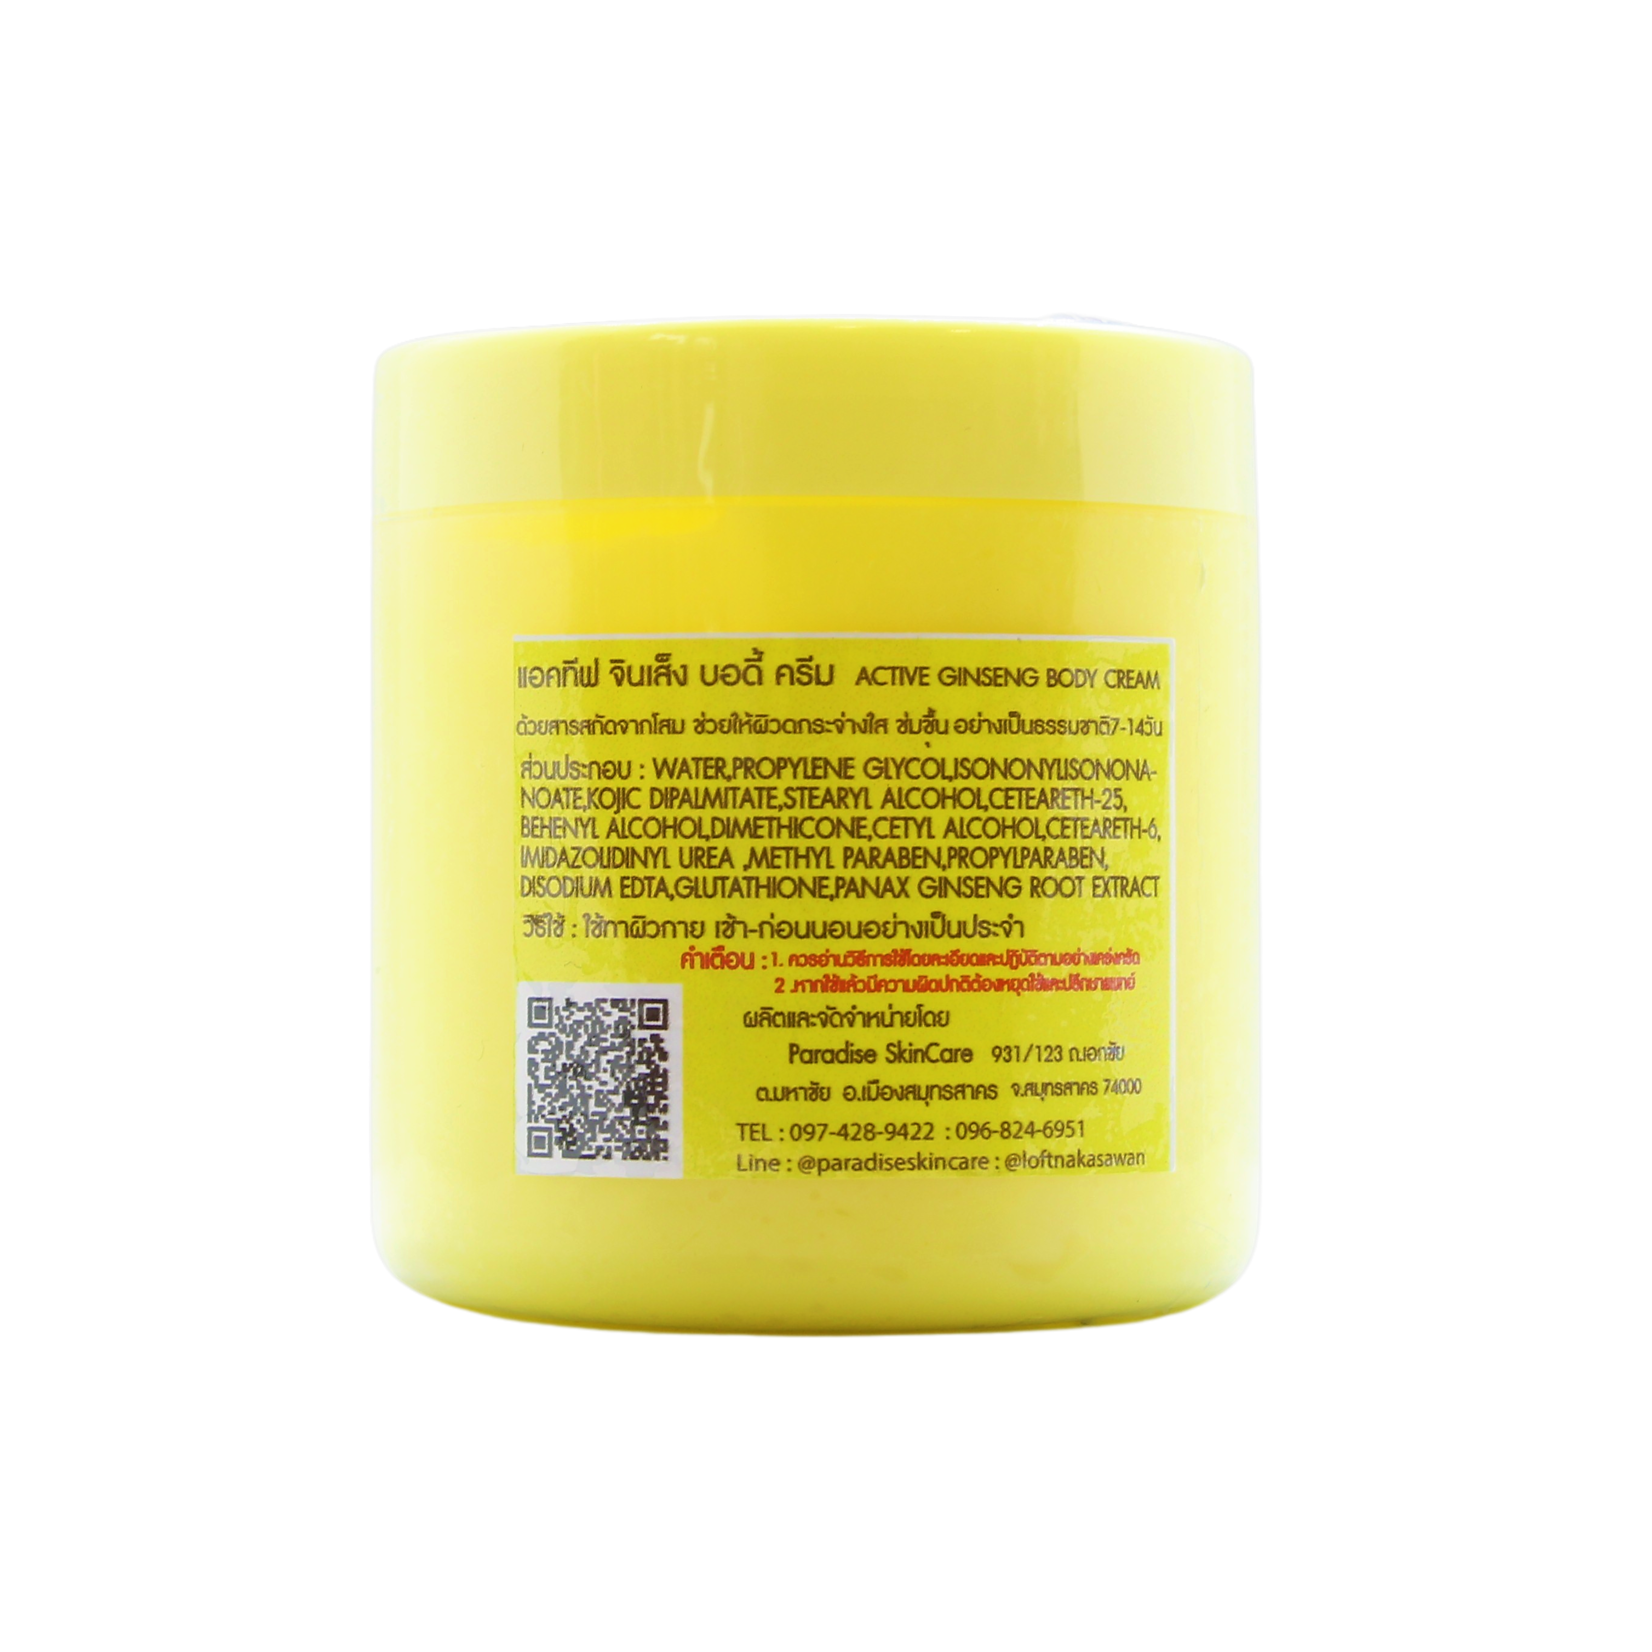 Overige Merken Paradise Skincare active Ginseng body Cream, 250 gram